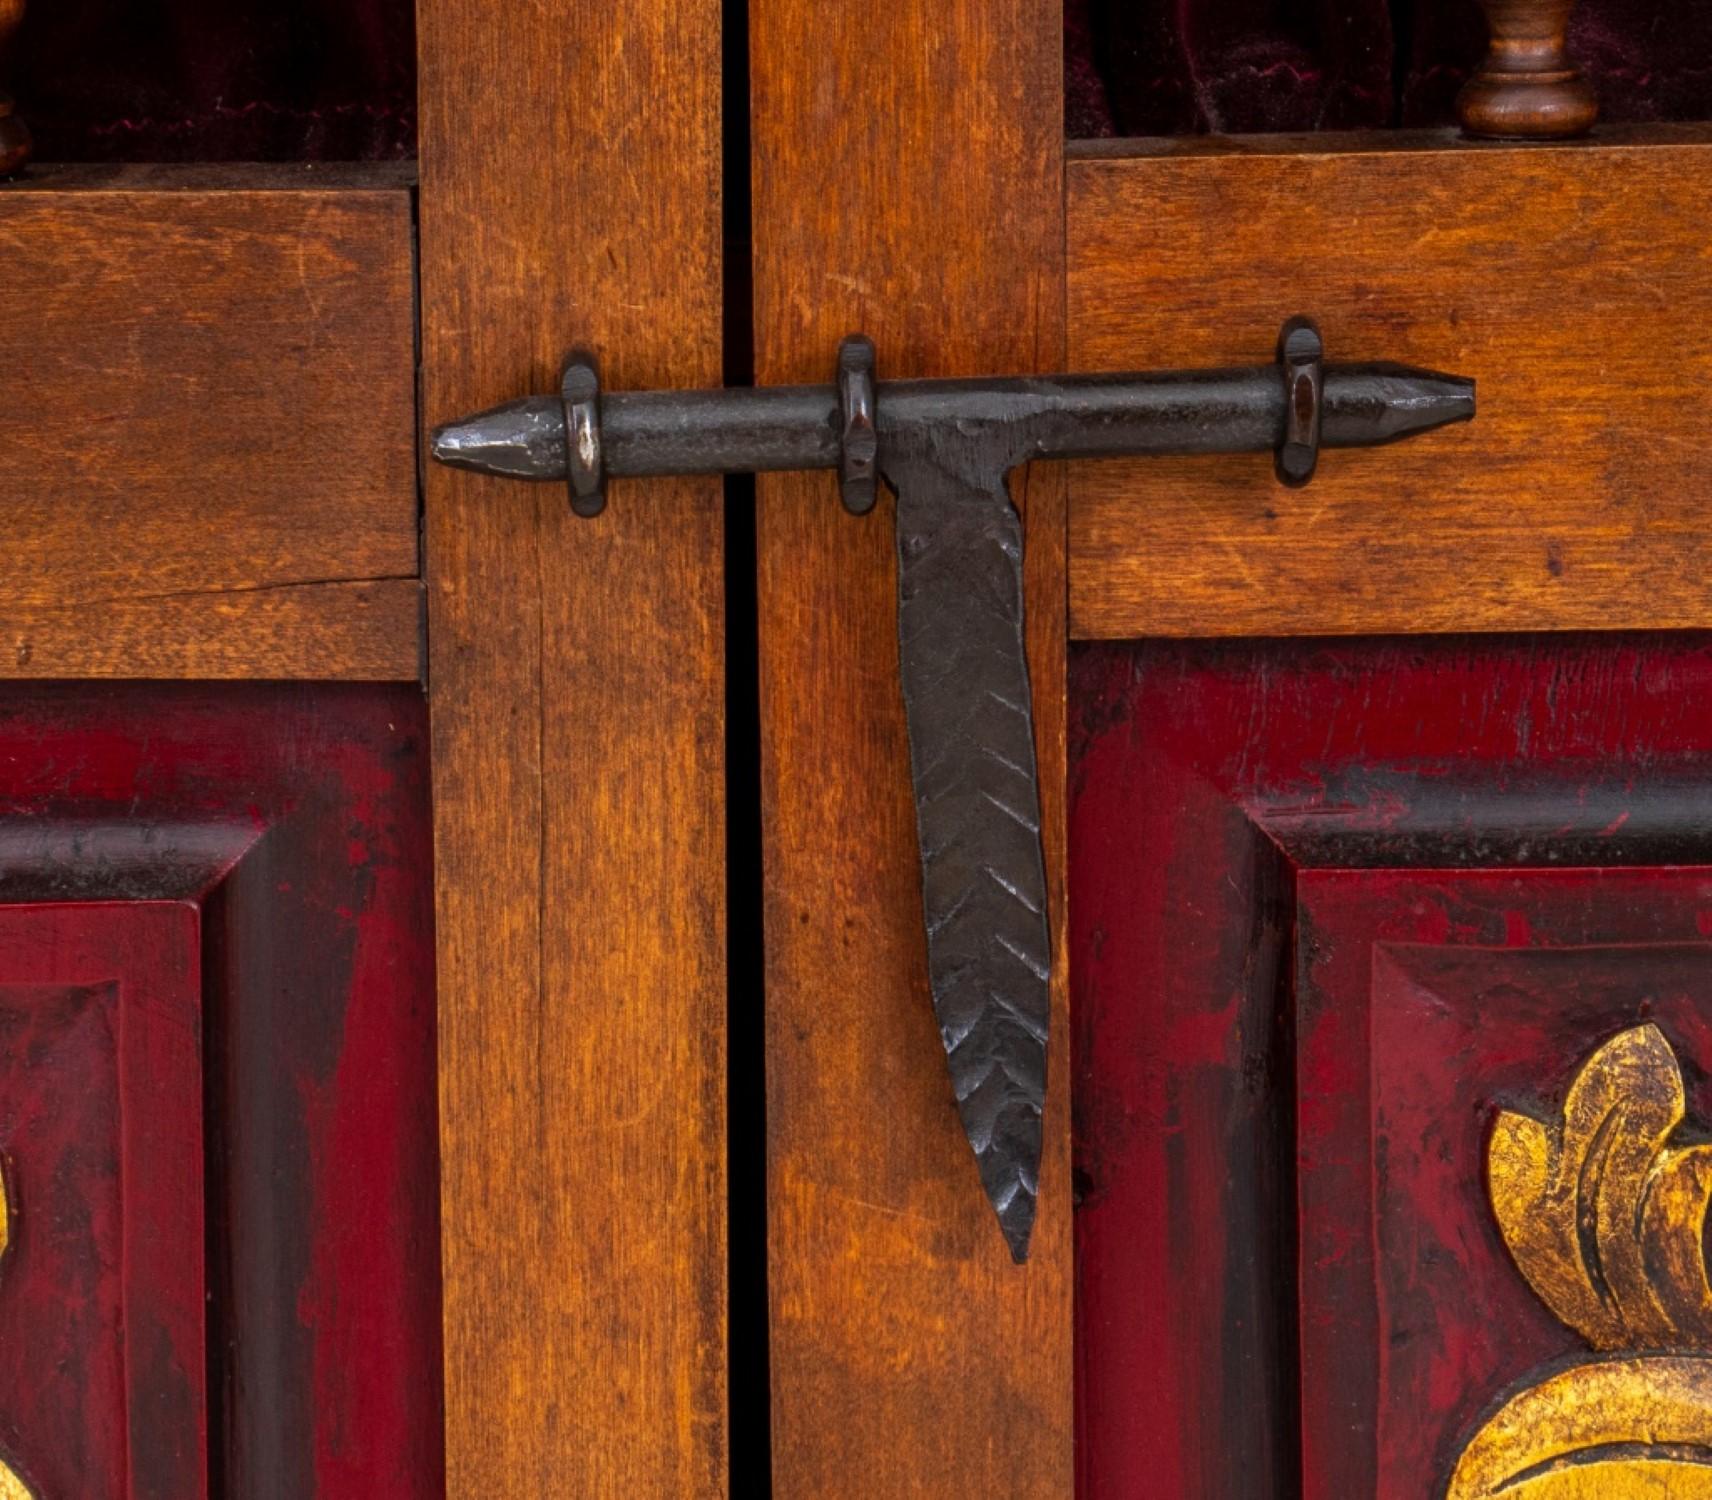 Beistellschrank oder Kredenz aus Eichenholz im spanischen Renaissance-Stil, mit zwei durchbrochenen Türen mit gusseisernen Scharnieren und geschnitzten Blattwerken.

Händler: S138XX